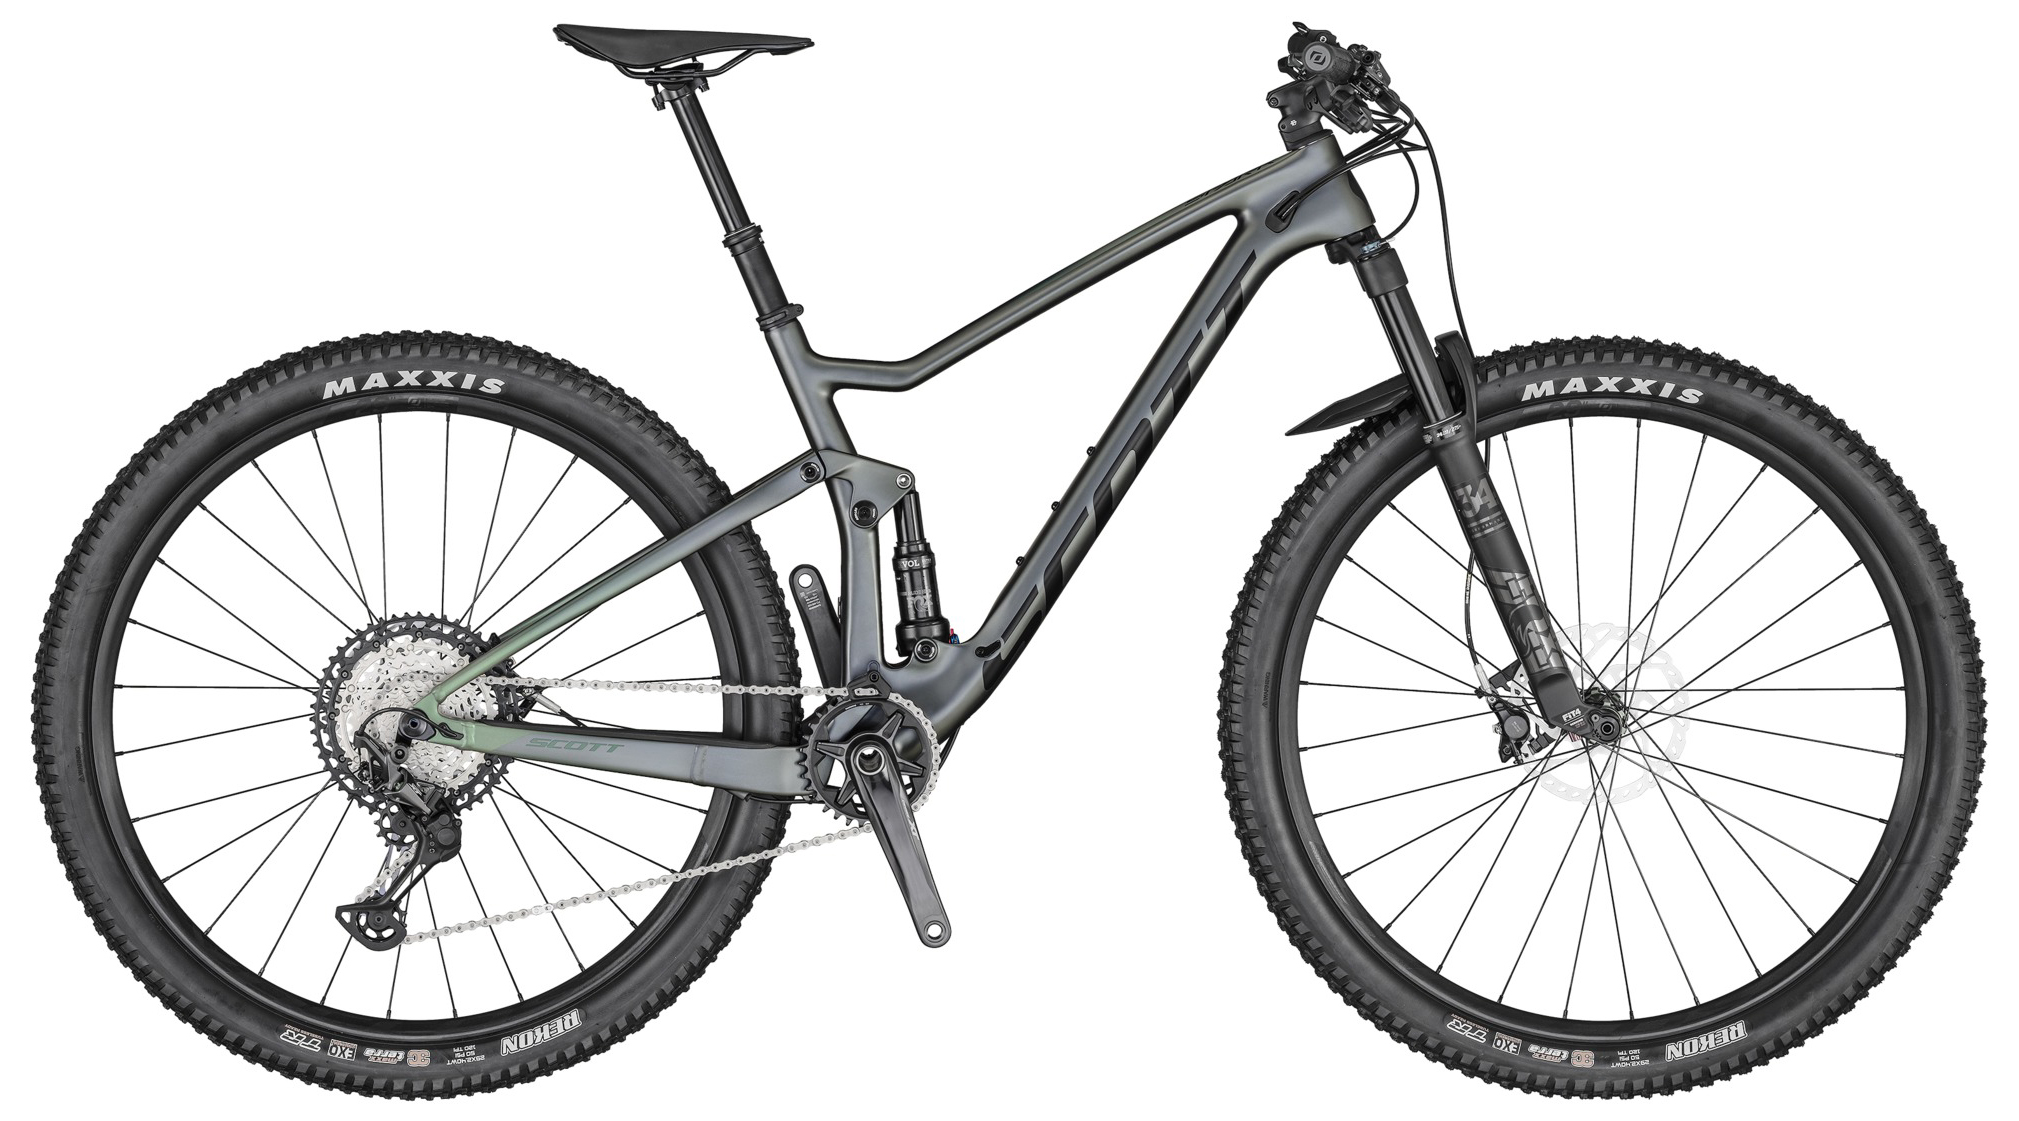  Отзывы о Двухподвесном велосипеде Scott Spark 910 2022